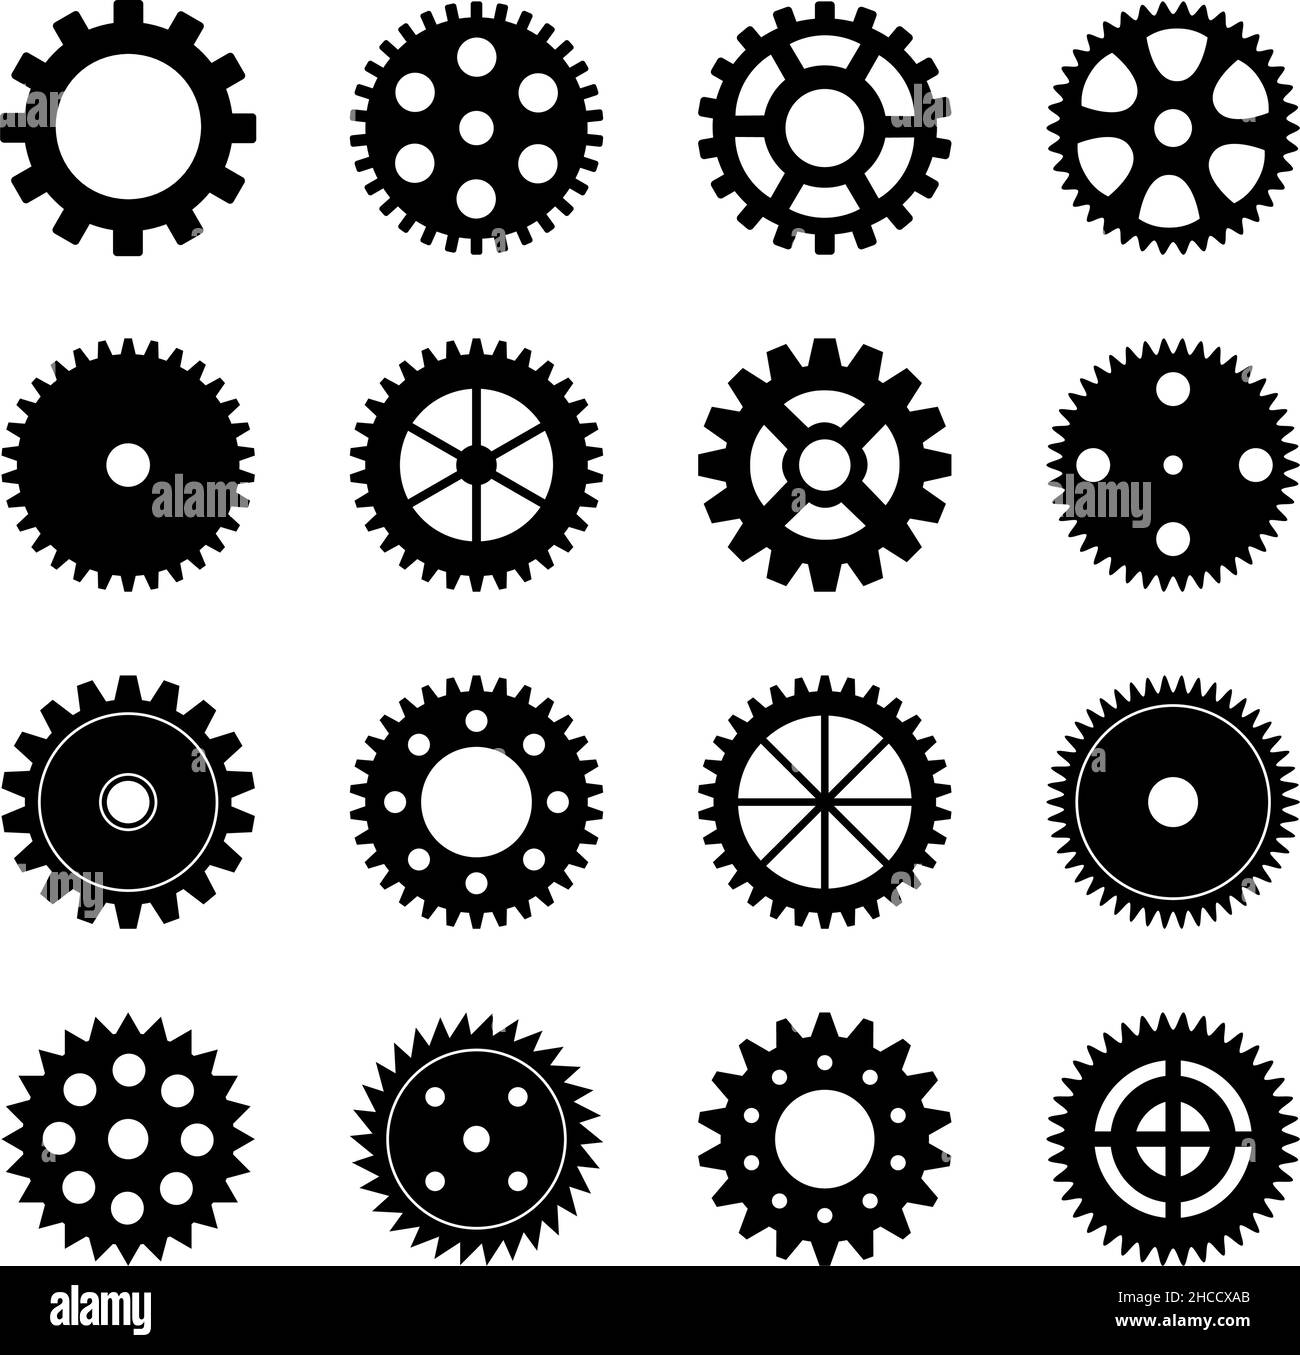 Set of gear wheels, vector illustration Stock Vector